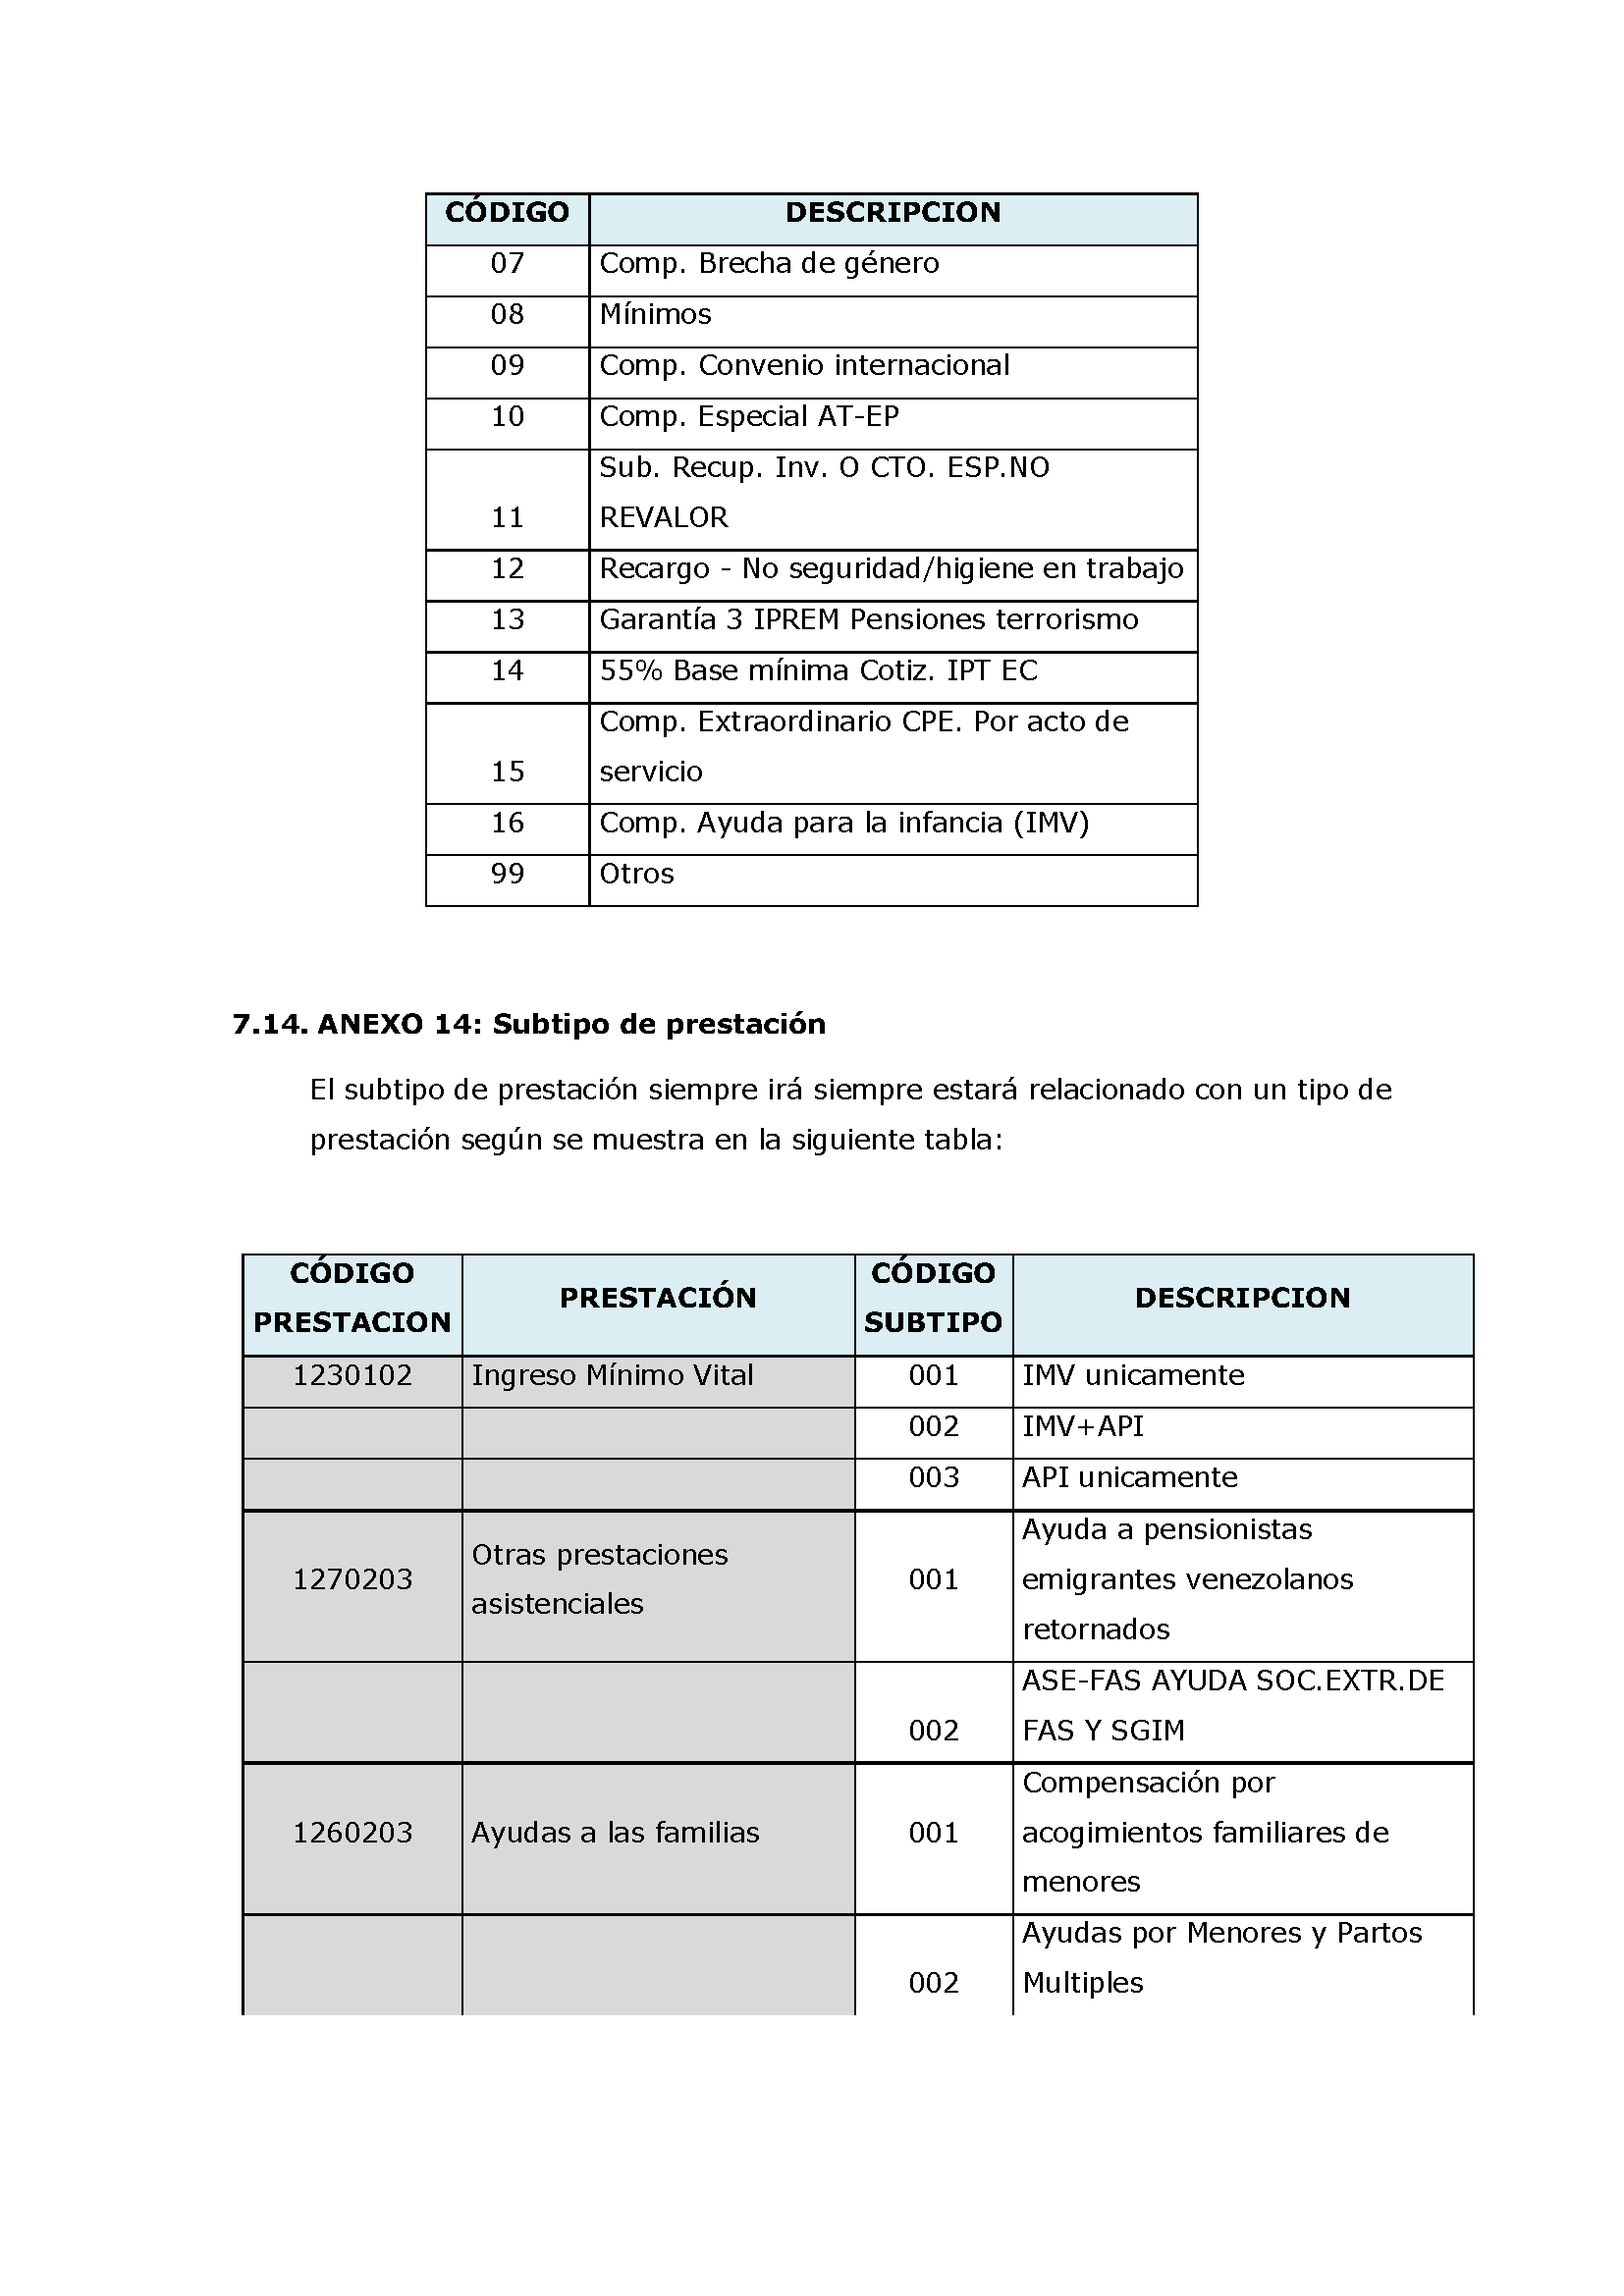 ANEXOS PROTOCOLO DE INTERCAMBIO DE FICHEROS PARA LA CARGA DE DATOS EN TARJETA SOCIAL DIGITAL Pag 92